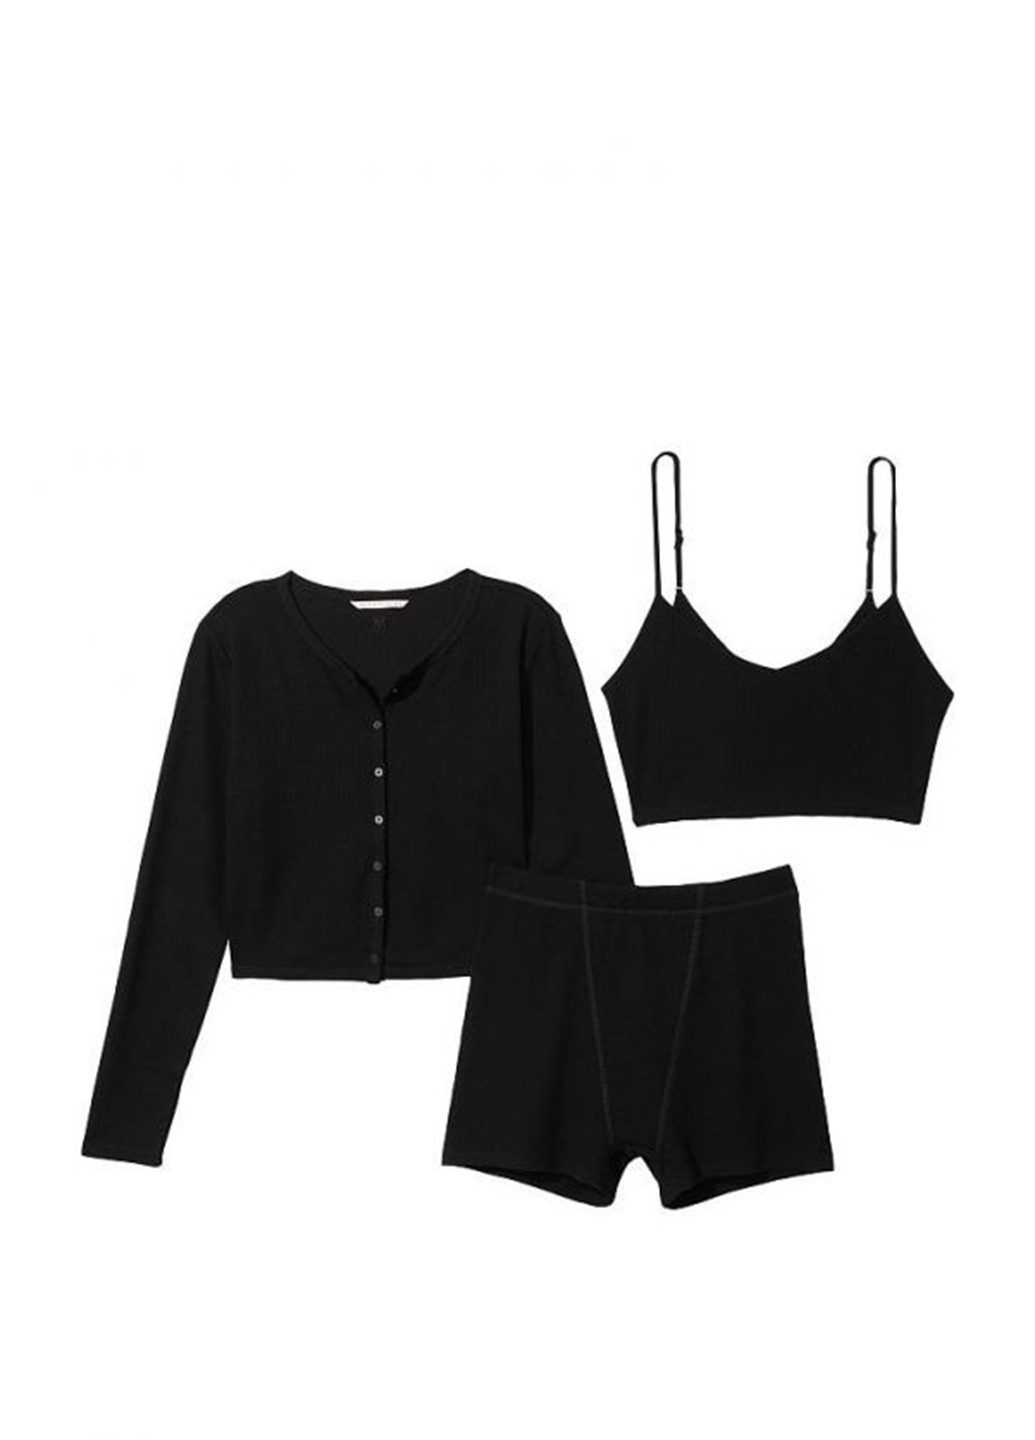 Черная всесезон пижама (кофта, топ, шорты) Victoria's Secret